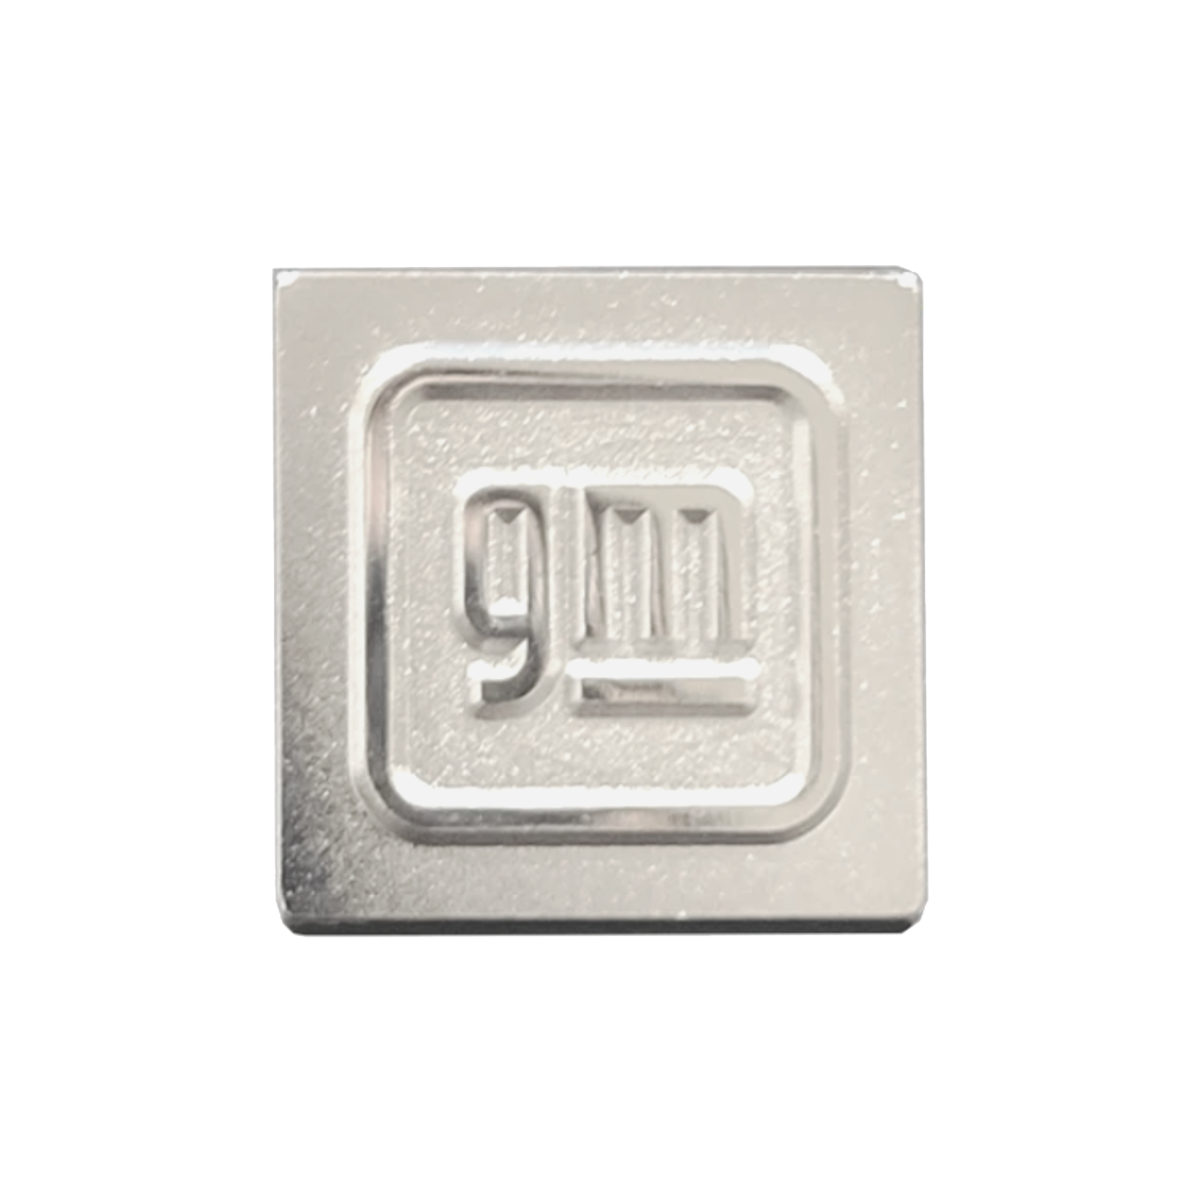 General Motors Lapel Pin